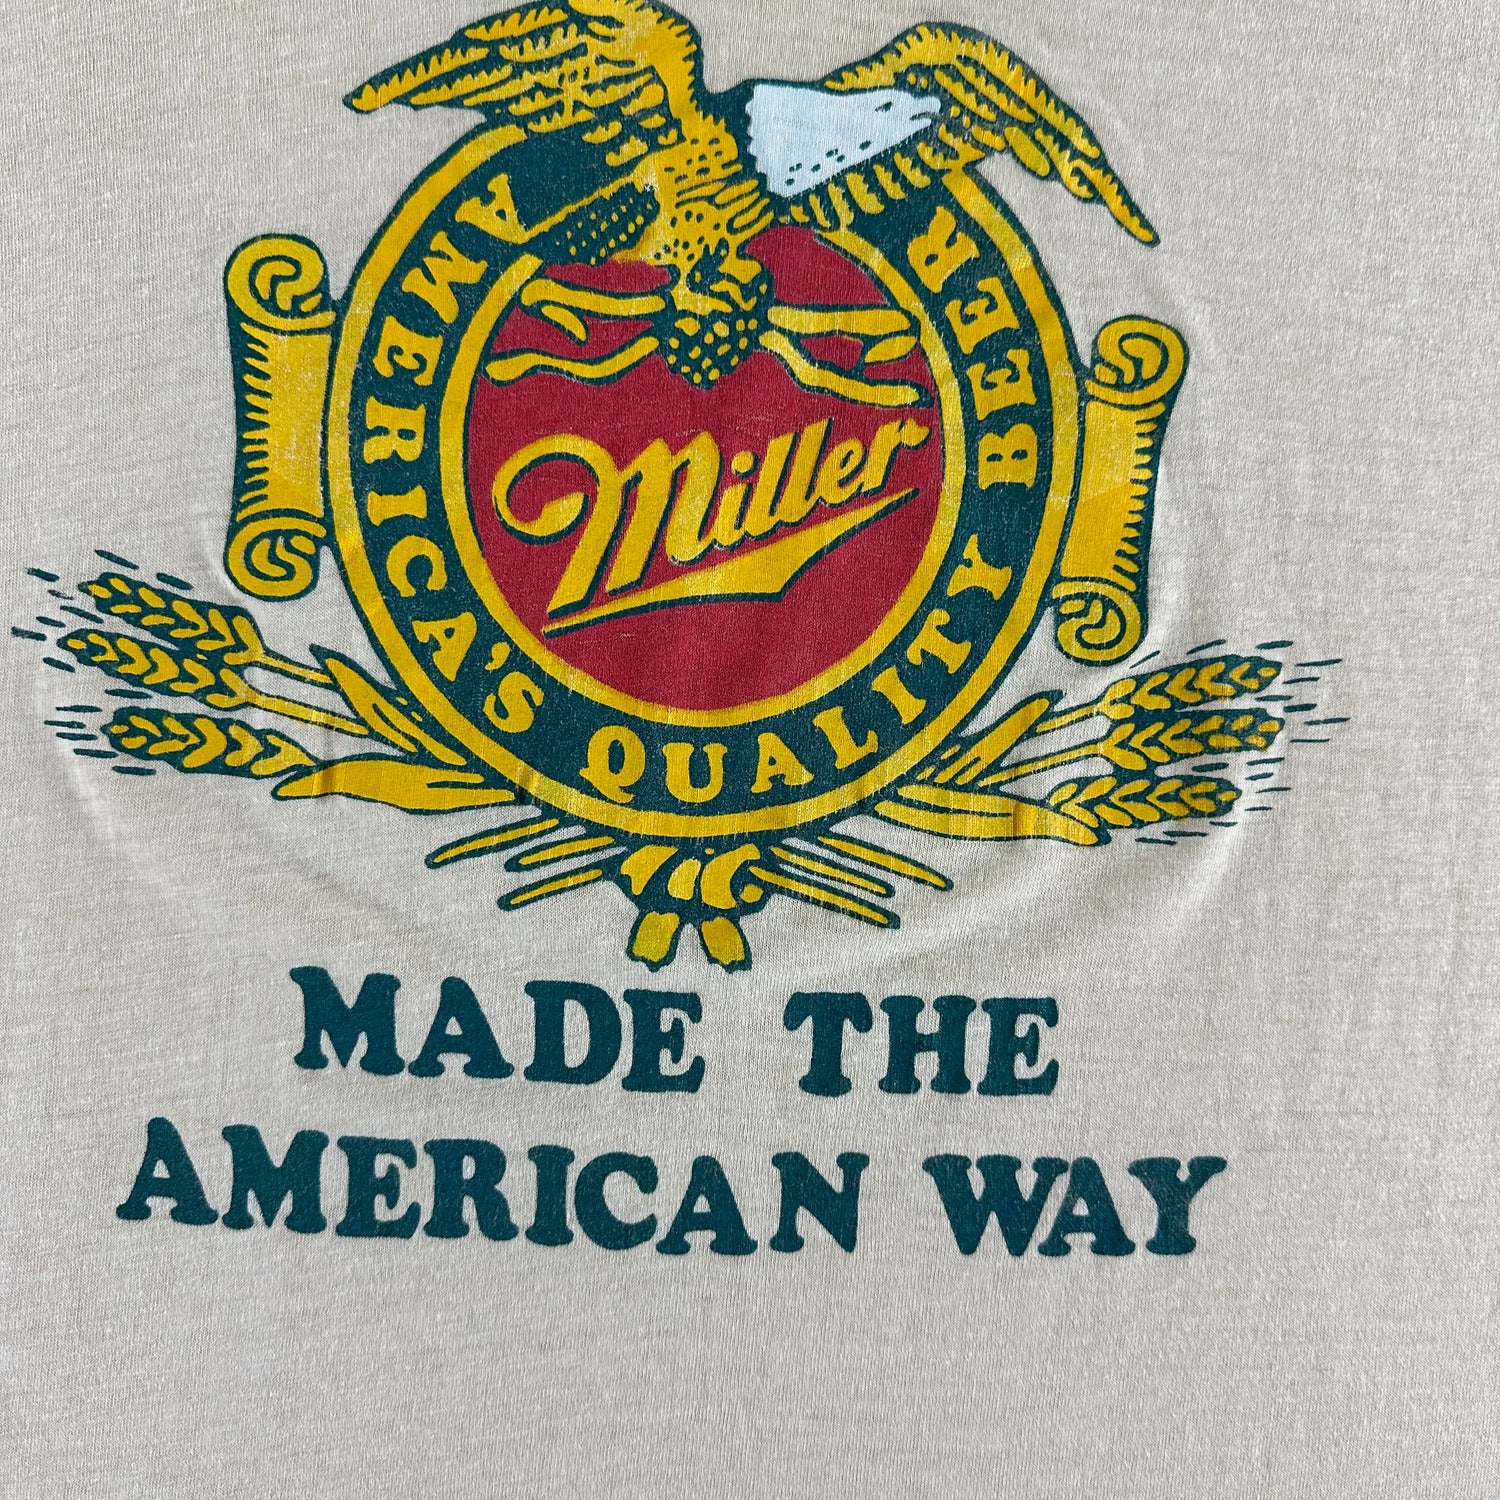 Vintage 1980s Miller T-shirt size Large